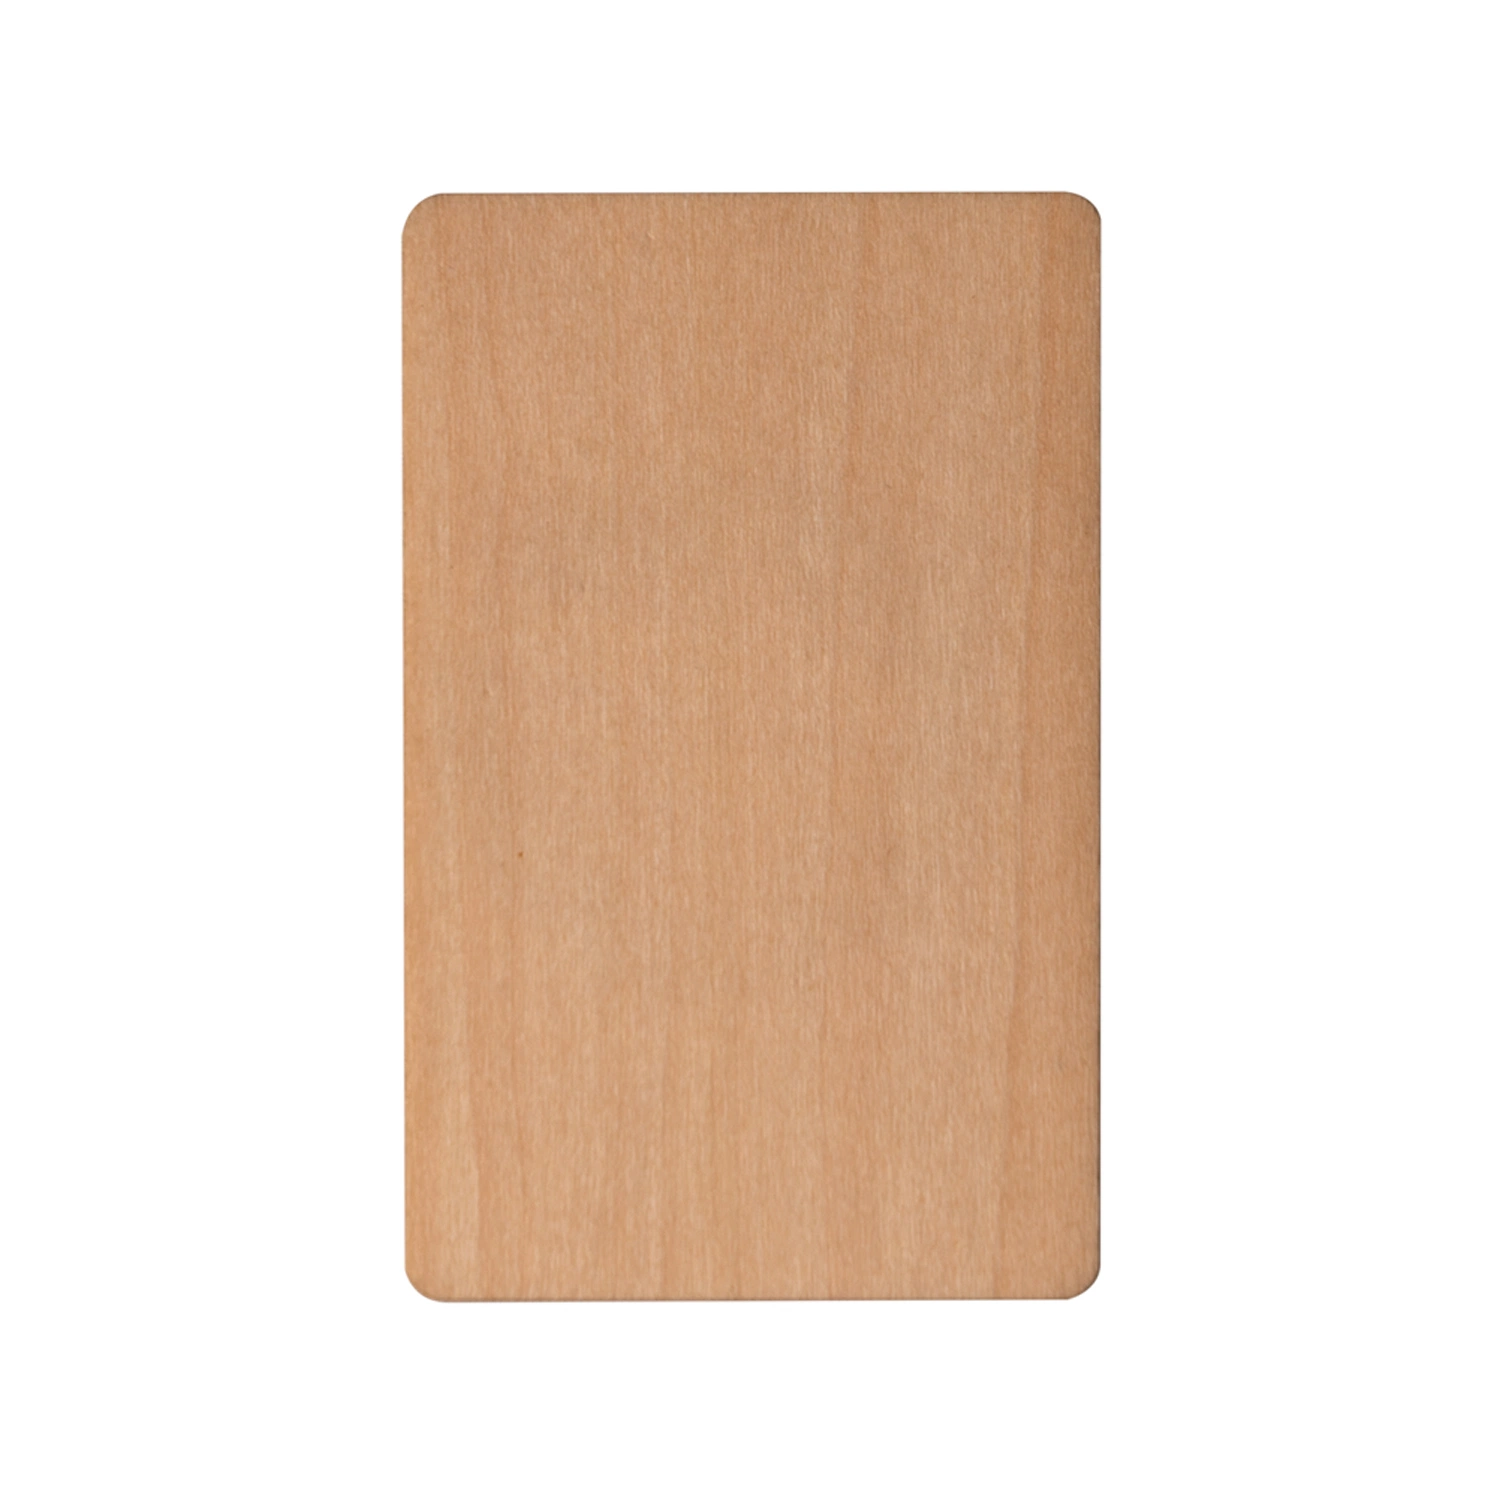 Holz NFC Karte Holz RFID Karte Holz Hote Schlüsselkarte